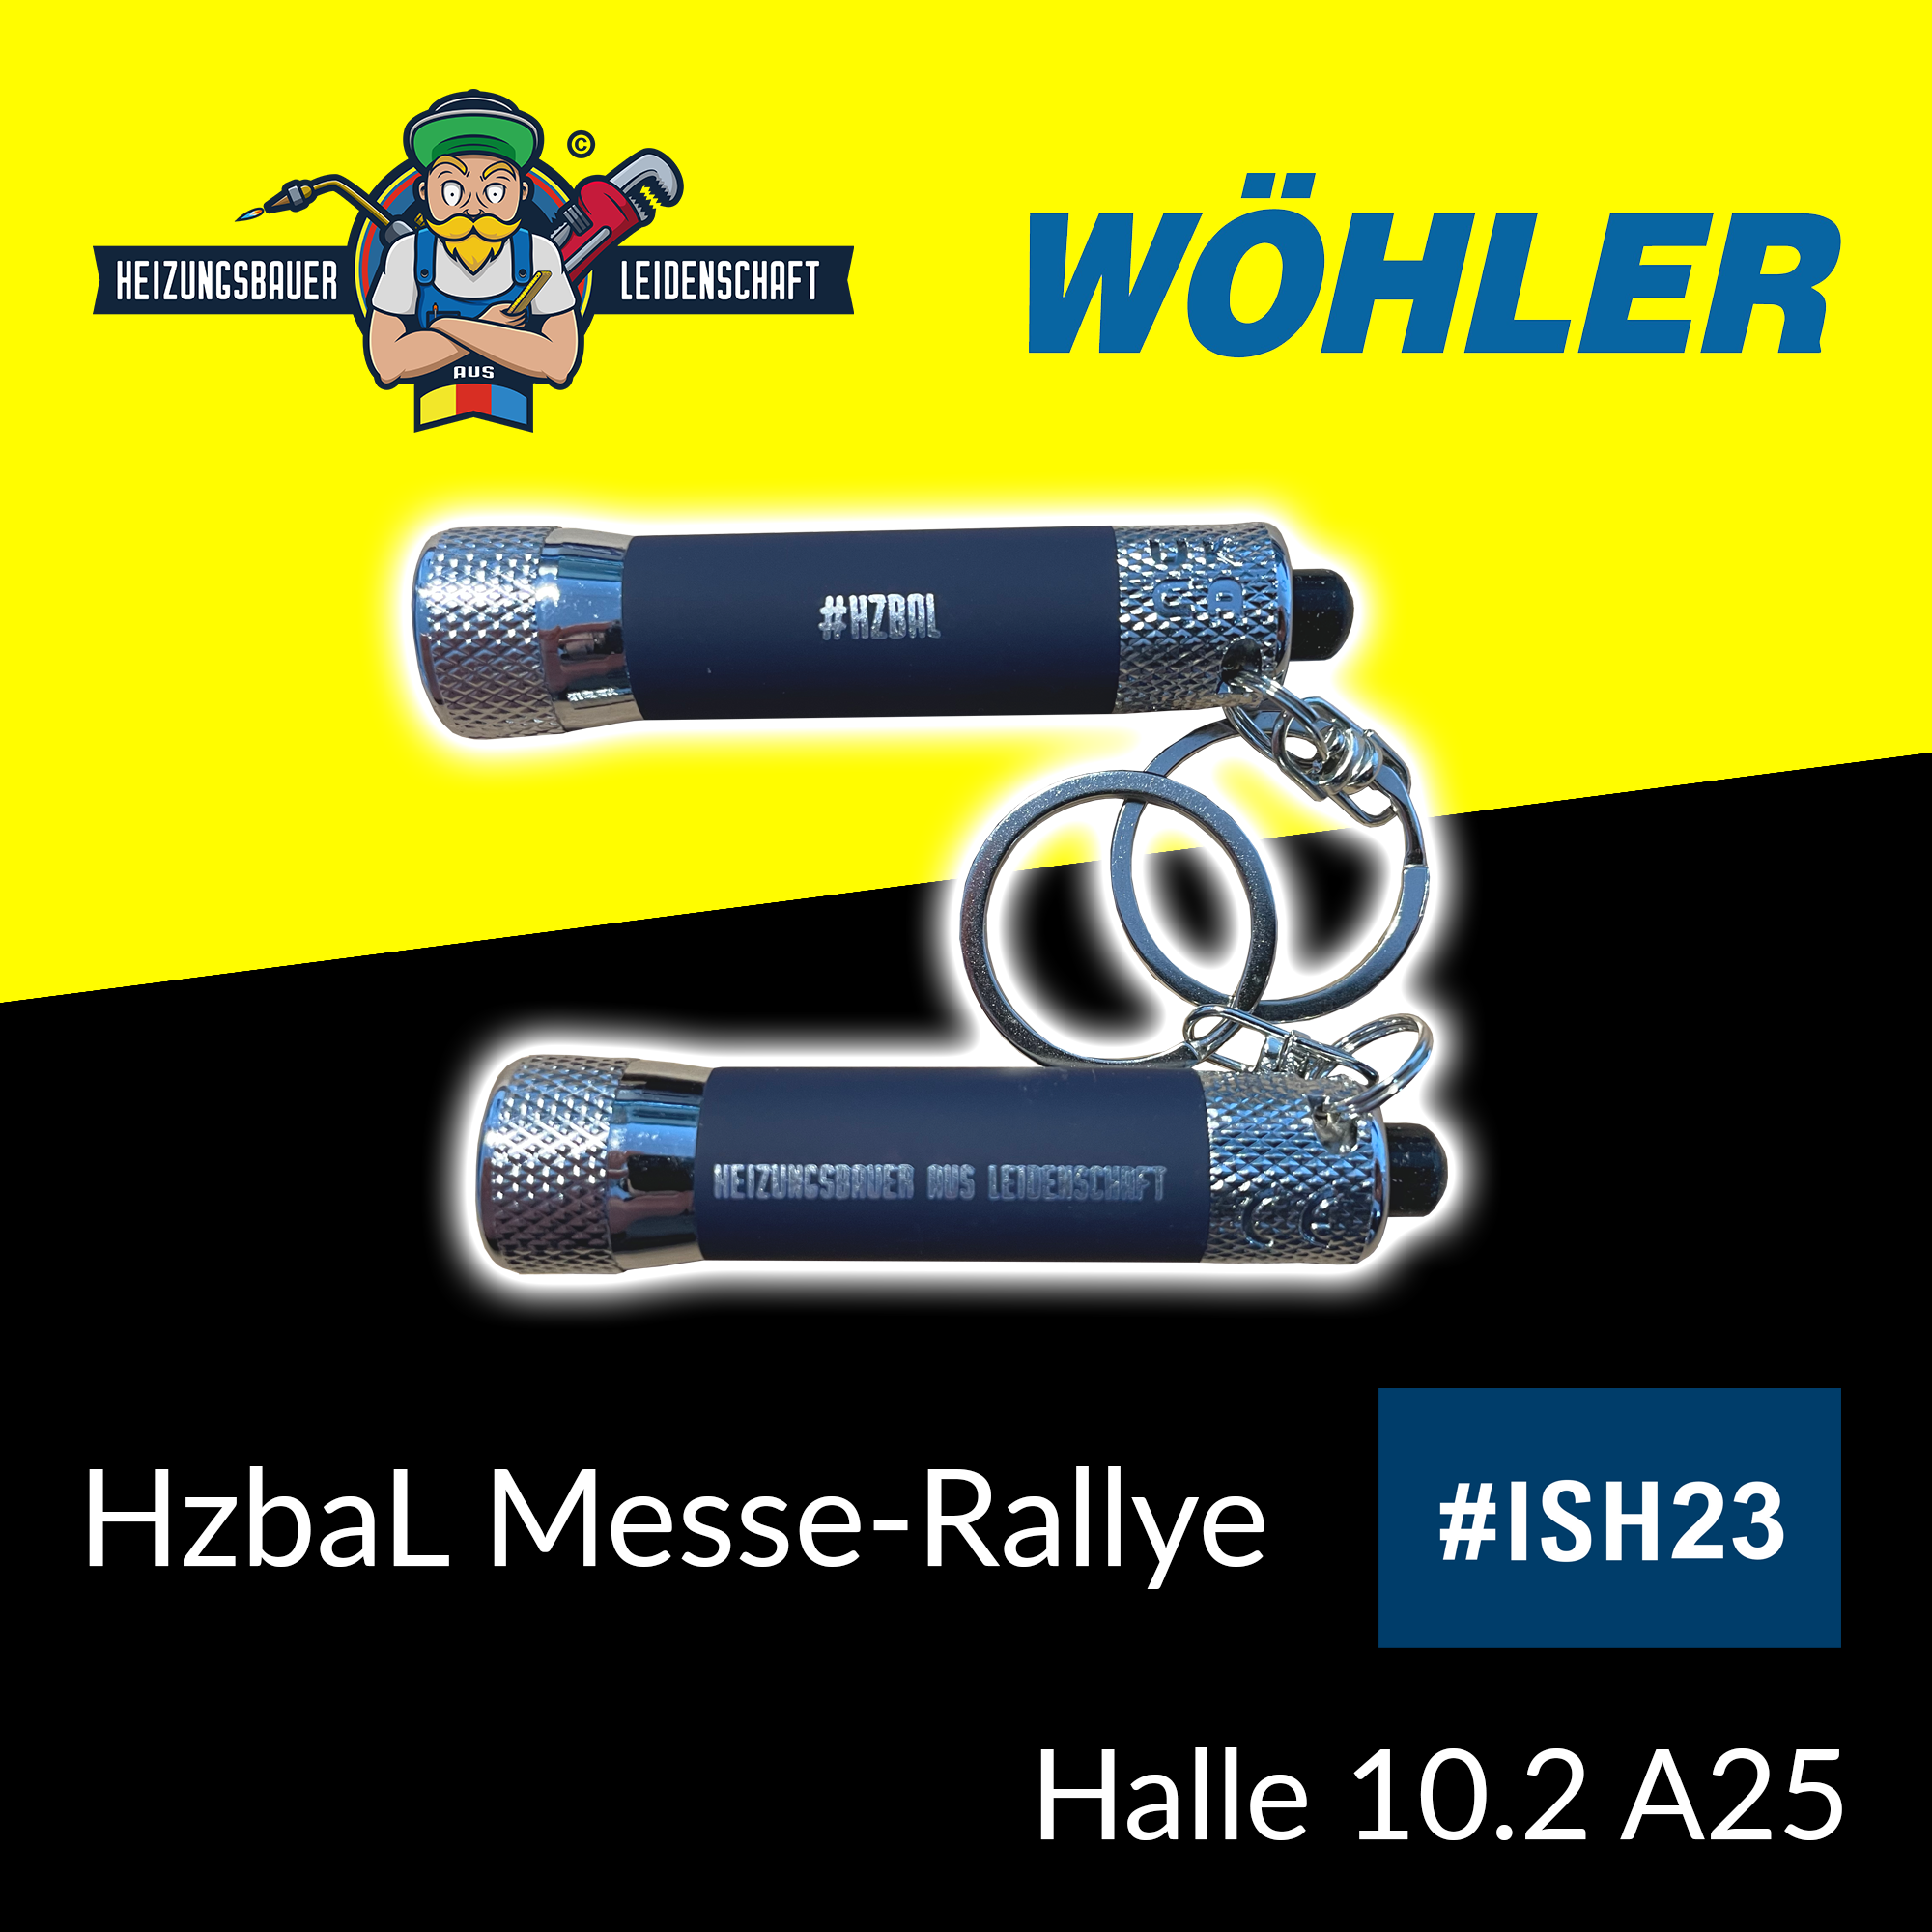 Wöhler bei der Heizungsbauer aus Leidenschaft Messe-Rallye auf der ISH 2023